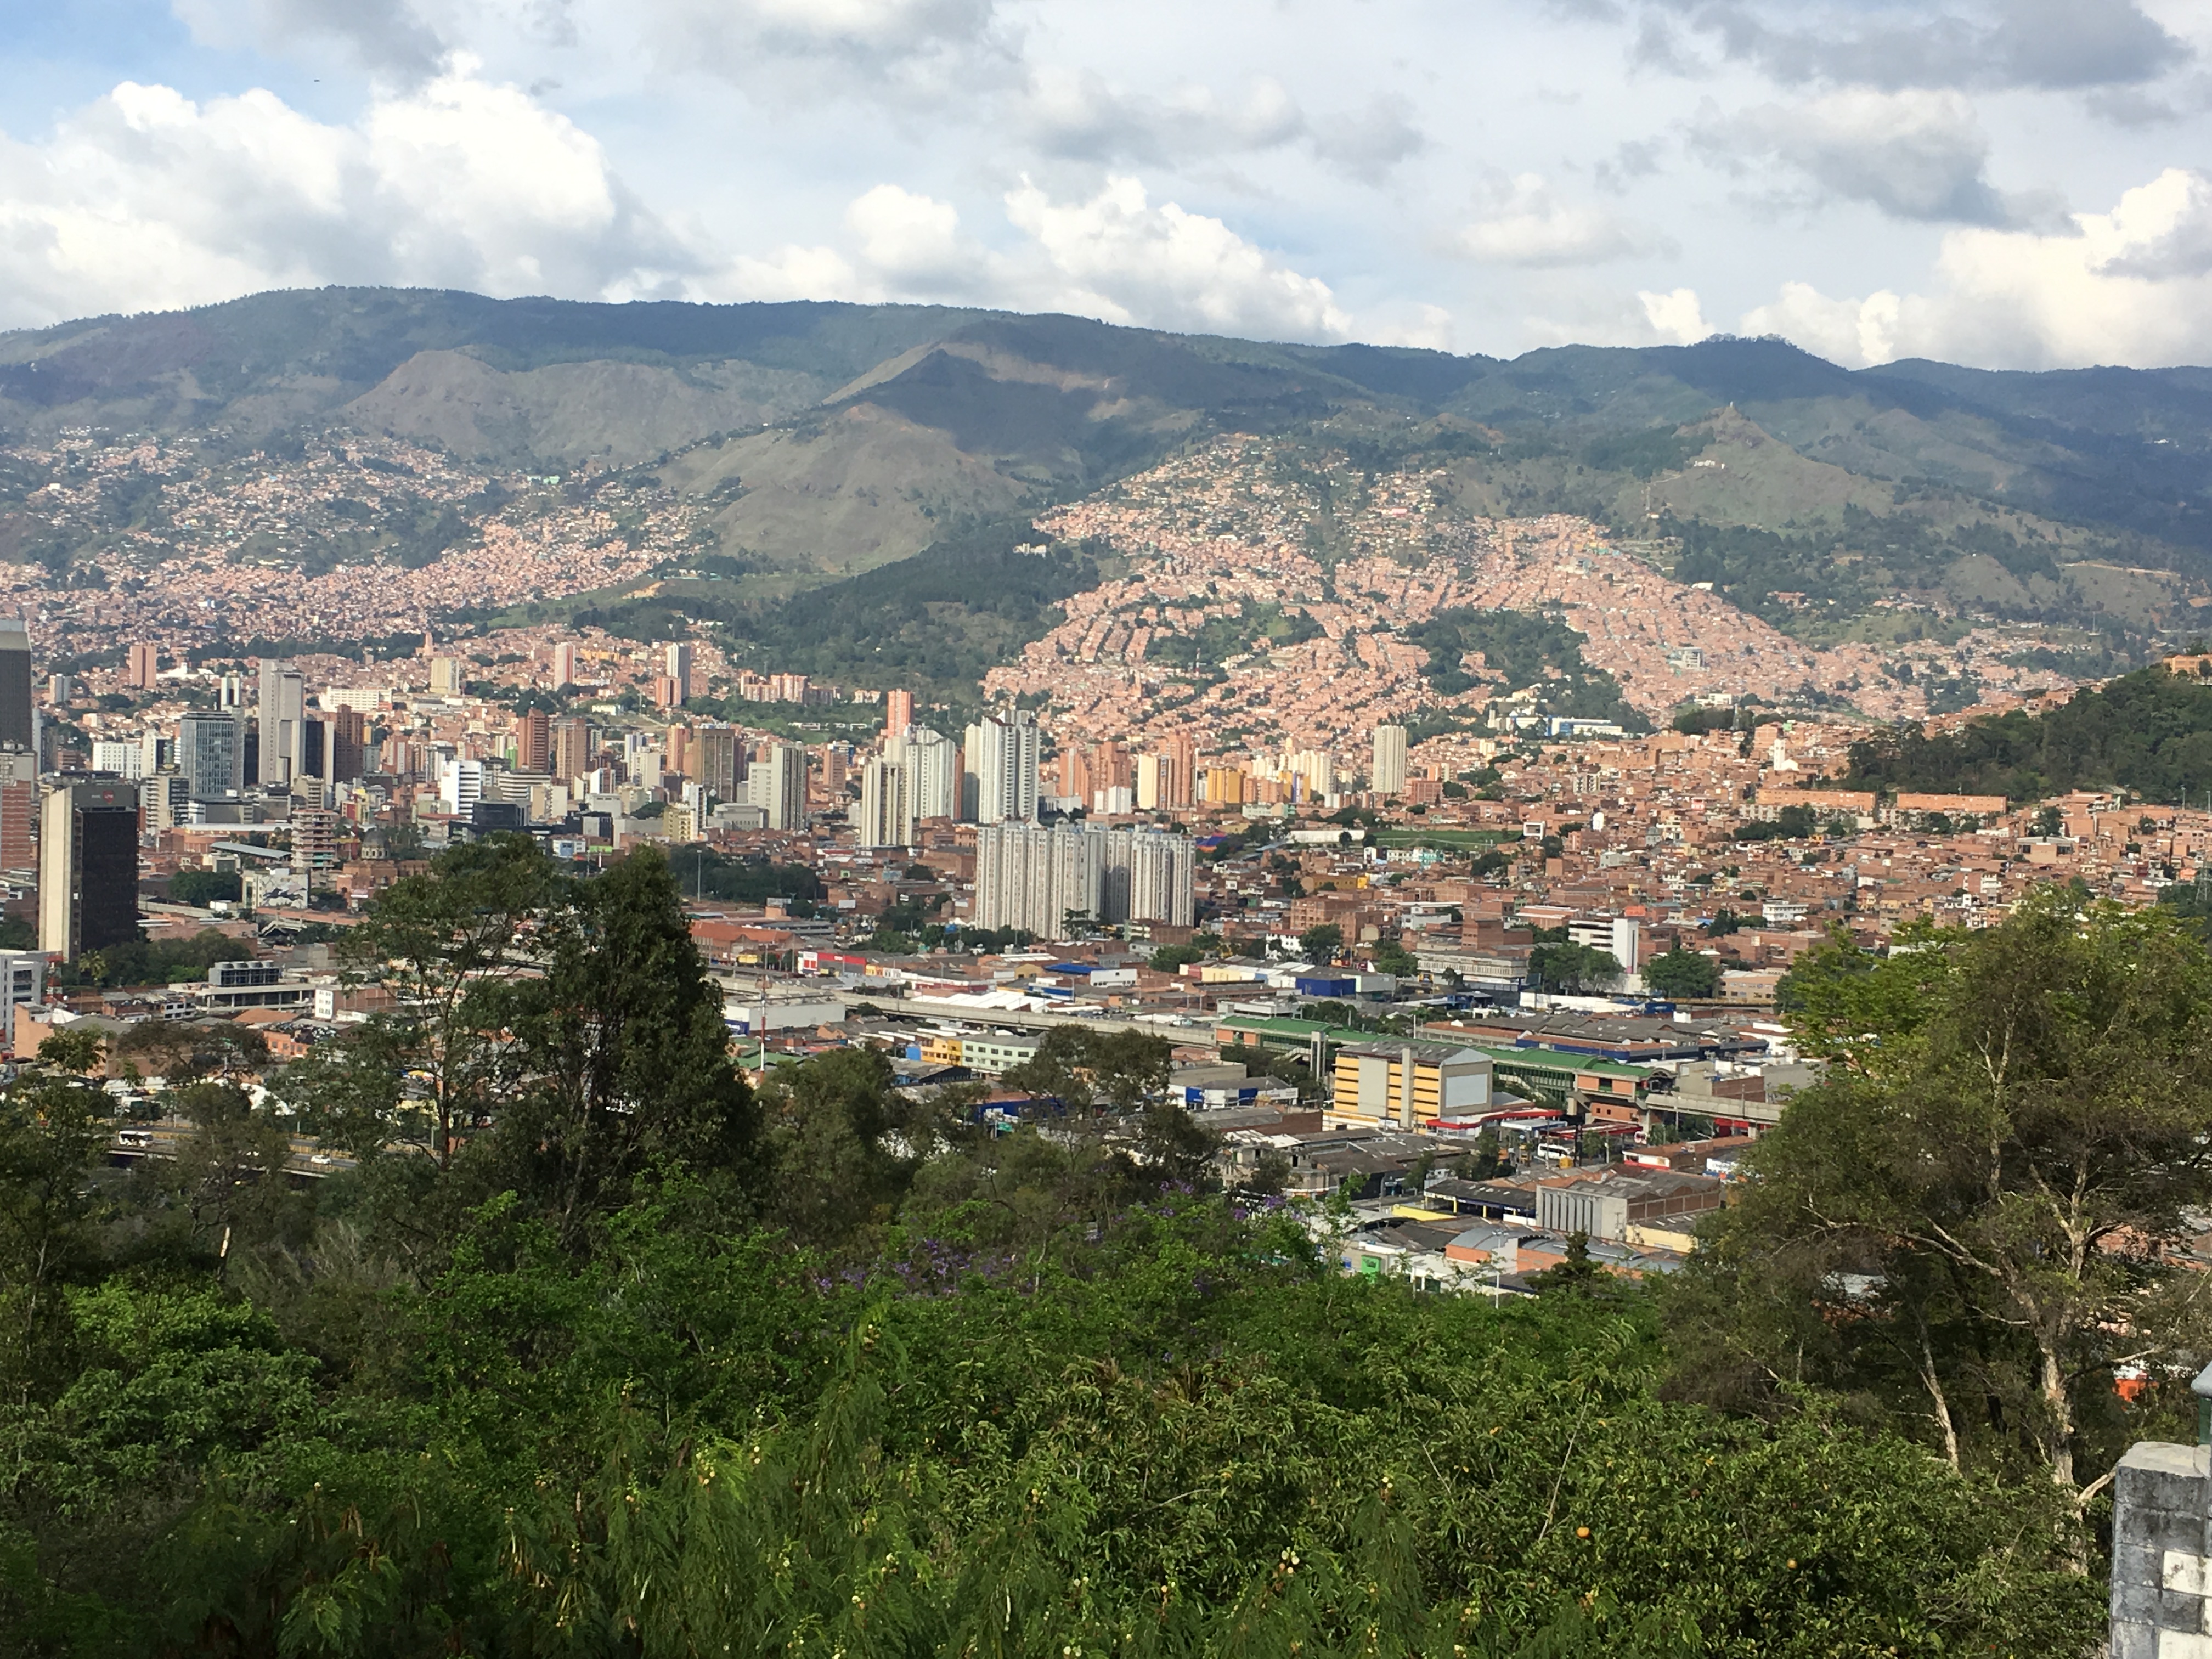 Reforç i acompanyament escolar (Colòmbia)